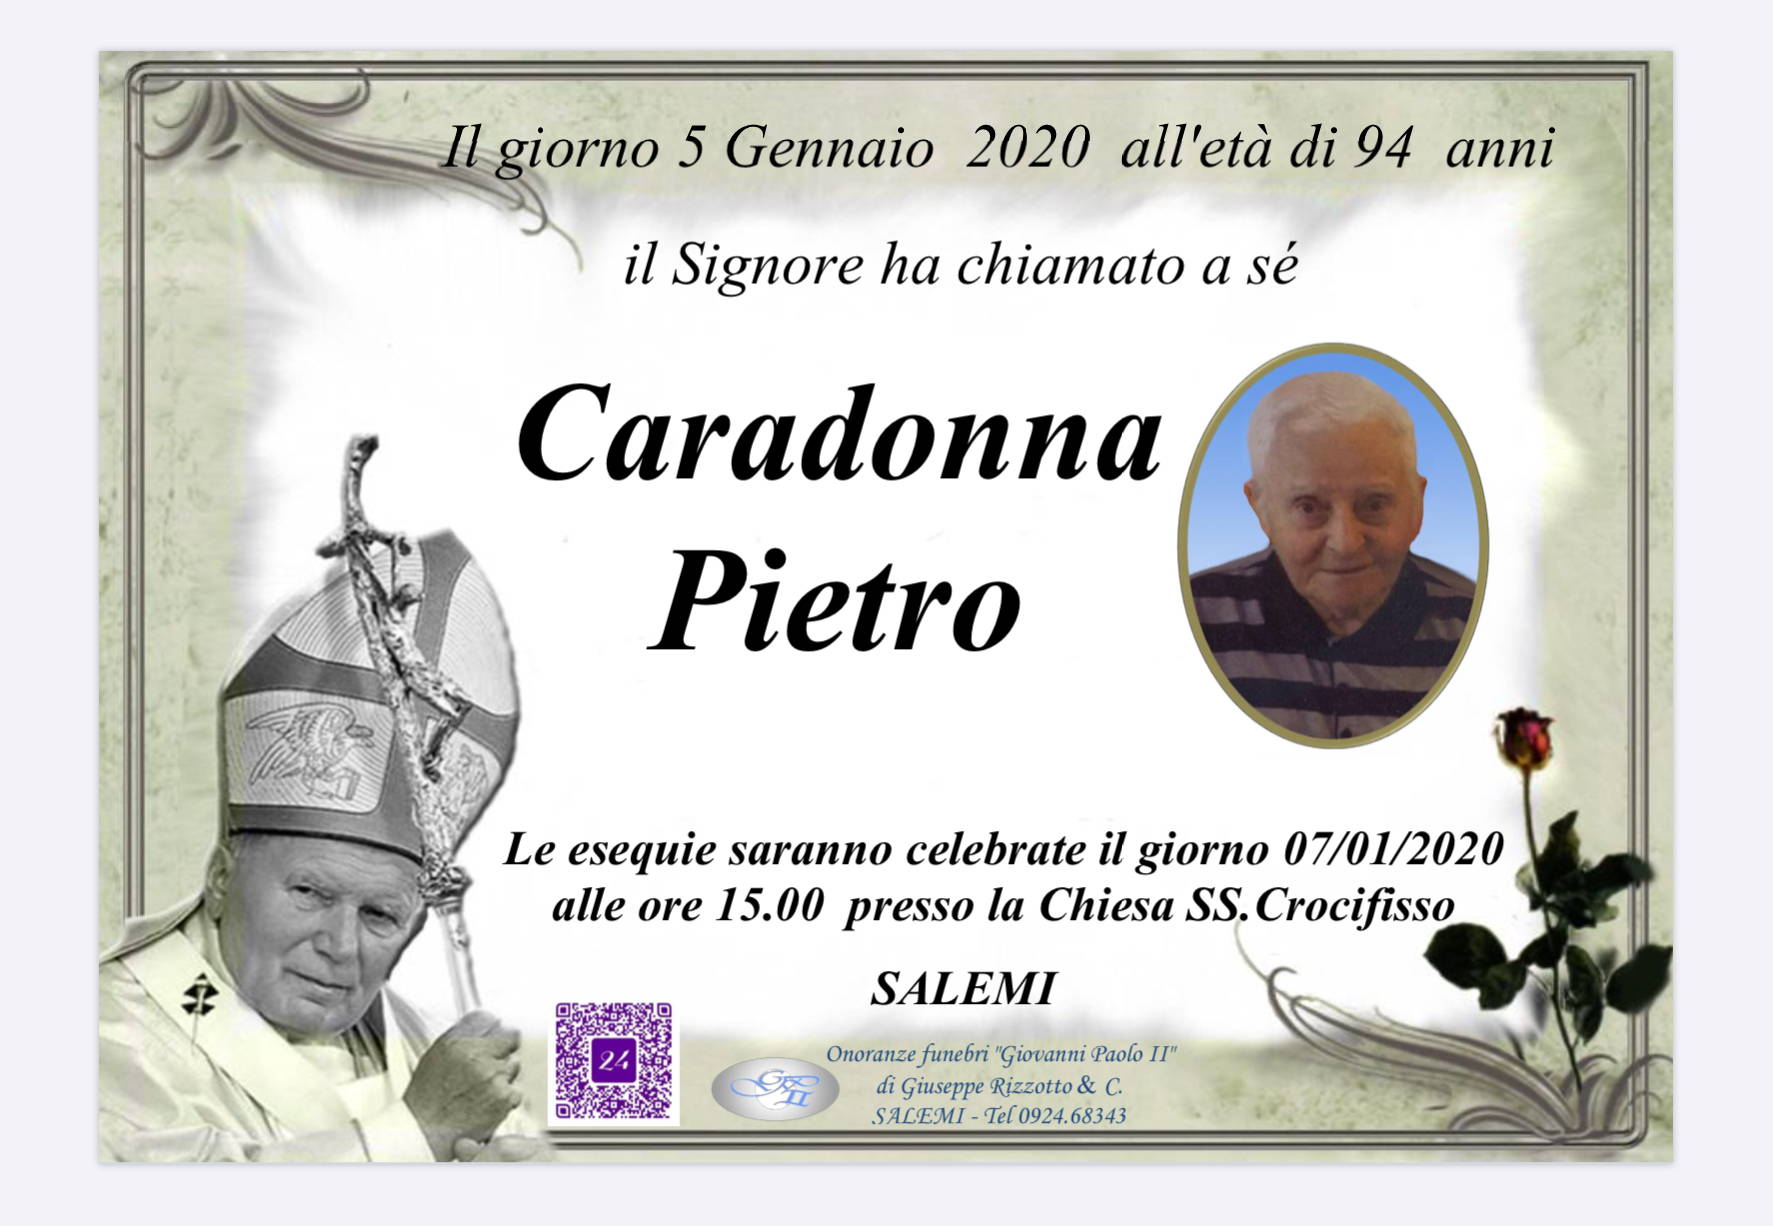 Pietro Caradonna